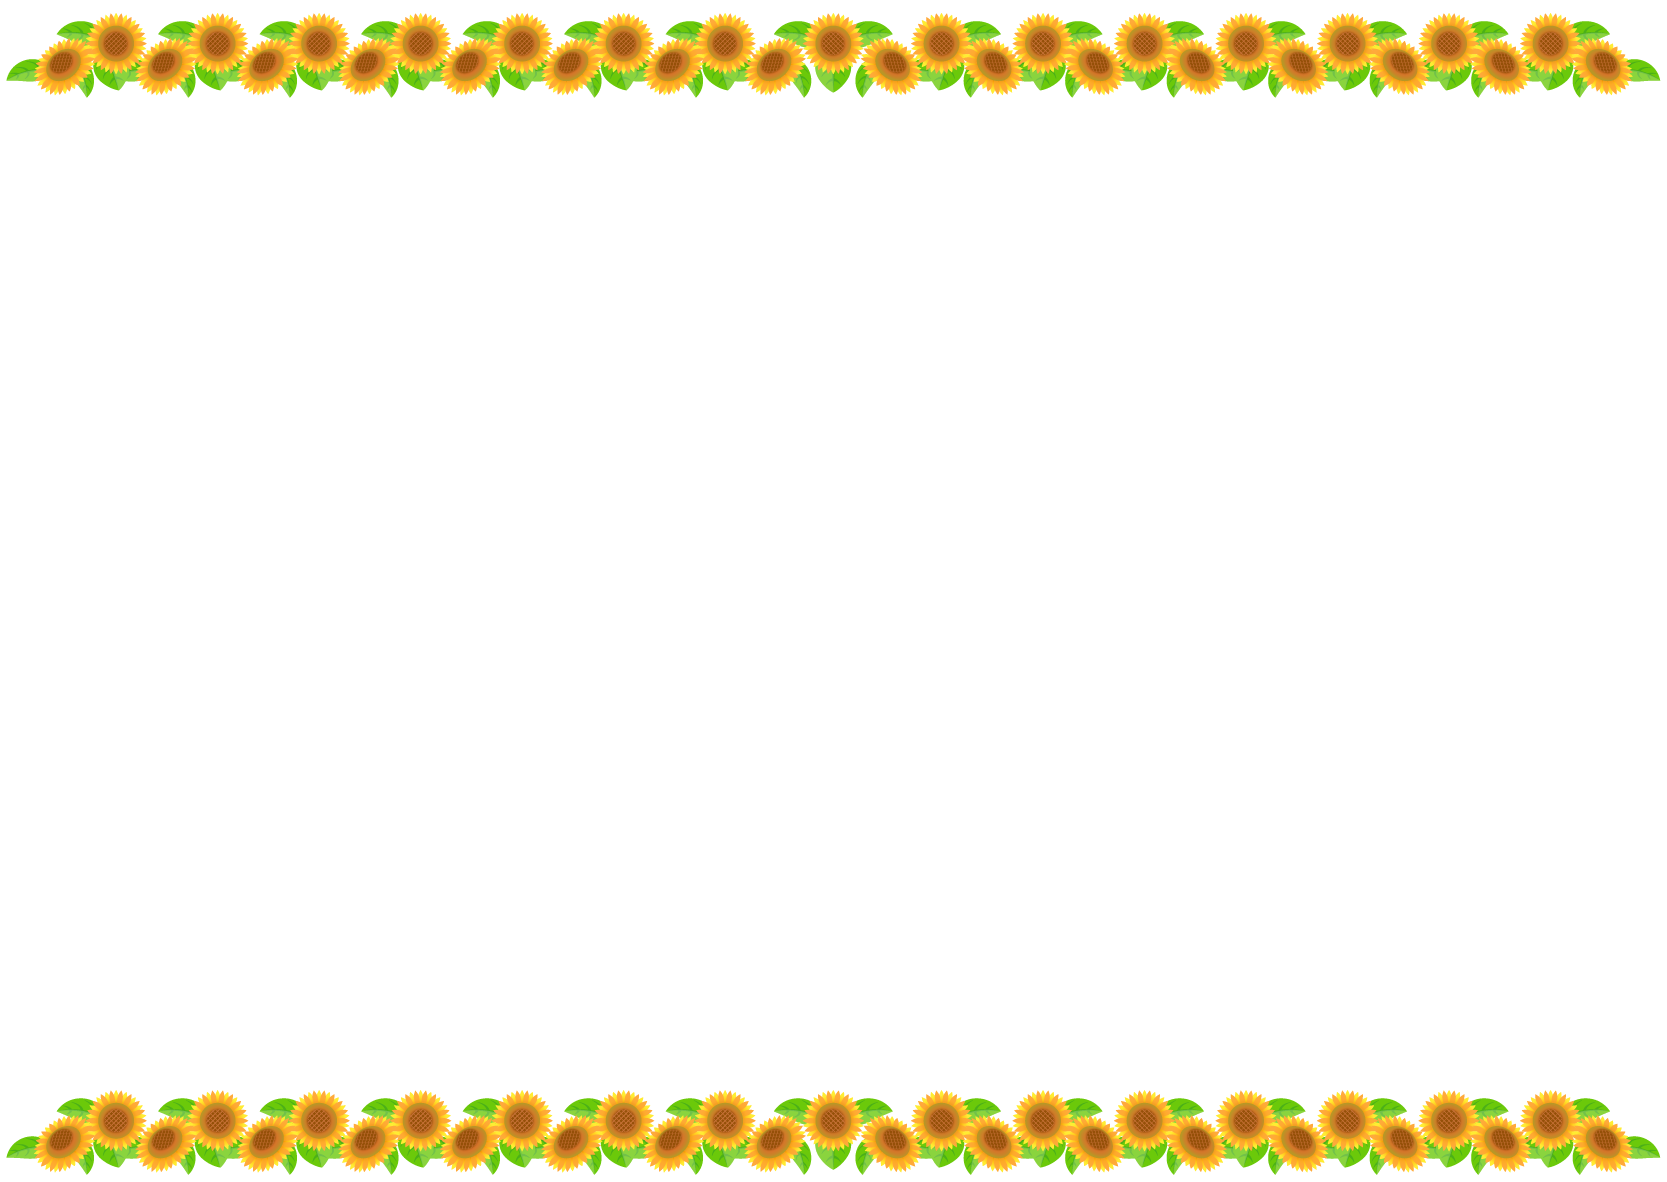 商用フリー 無料イラスト ひまわり 向日葵 のフレームイラスト Sunflowerillustration006 商用ok フリー素材集 ナイスな イラスト